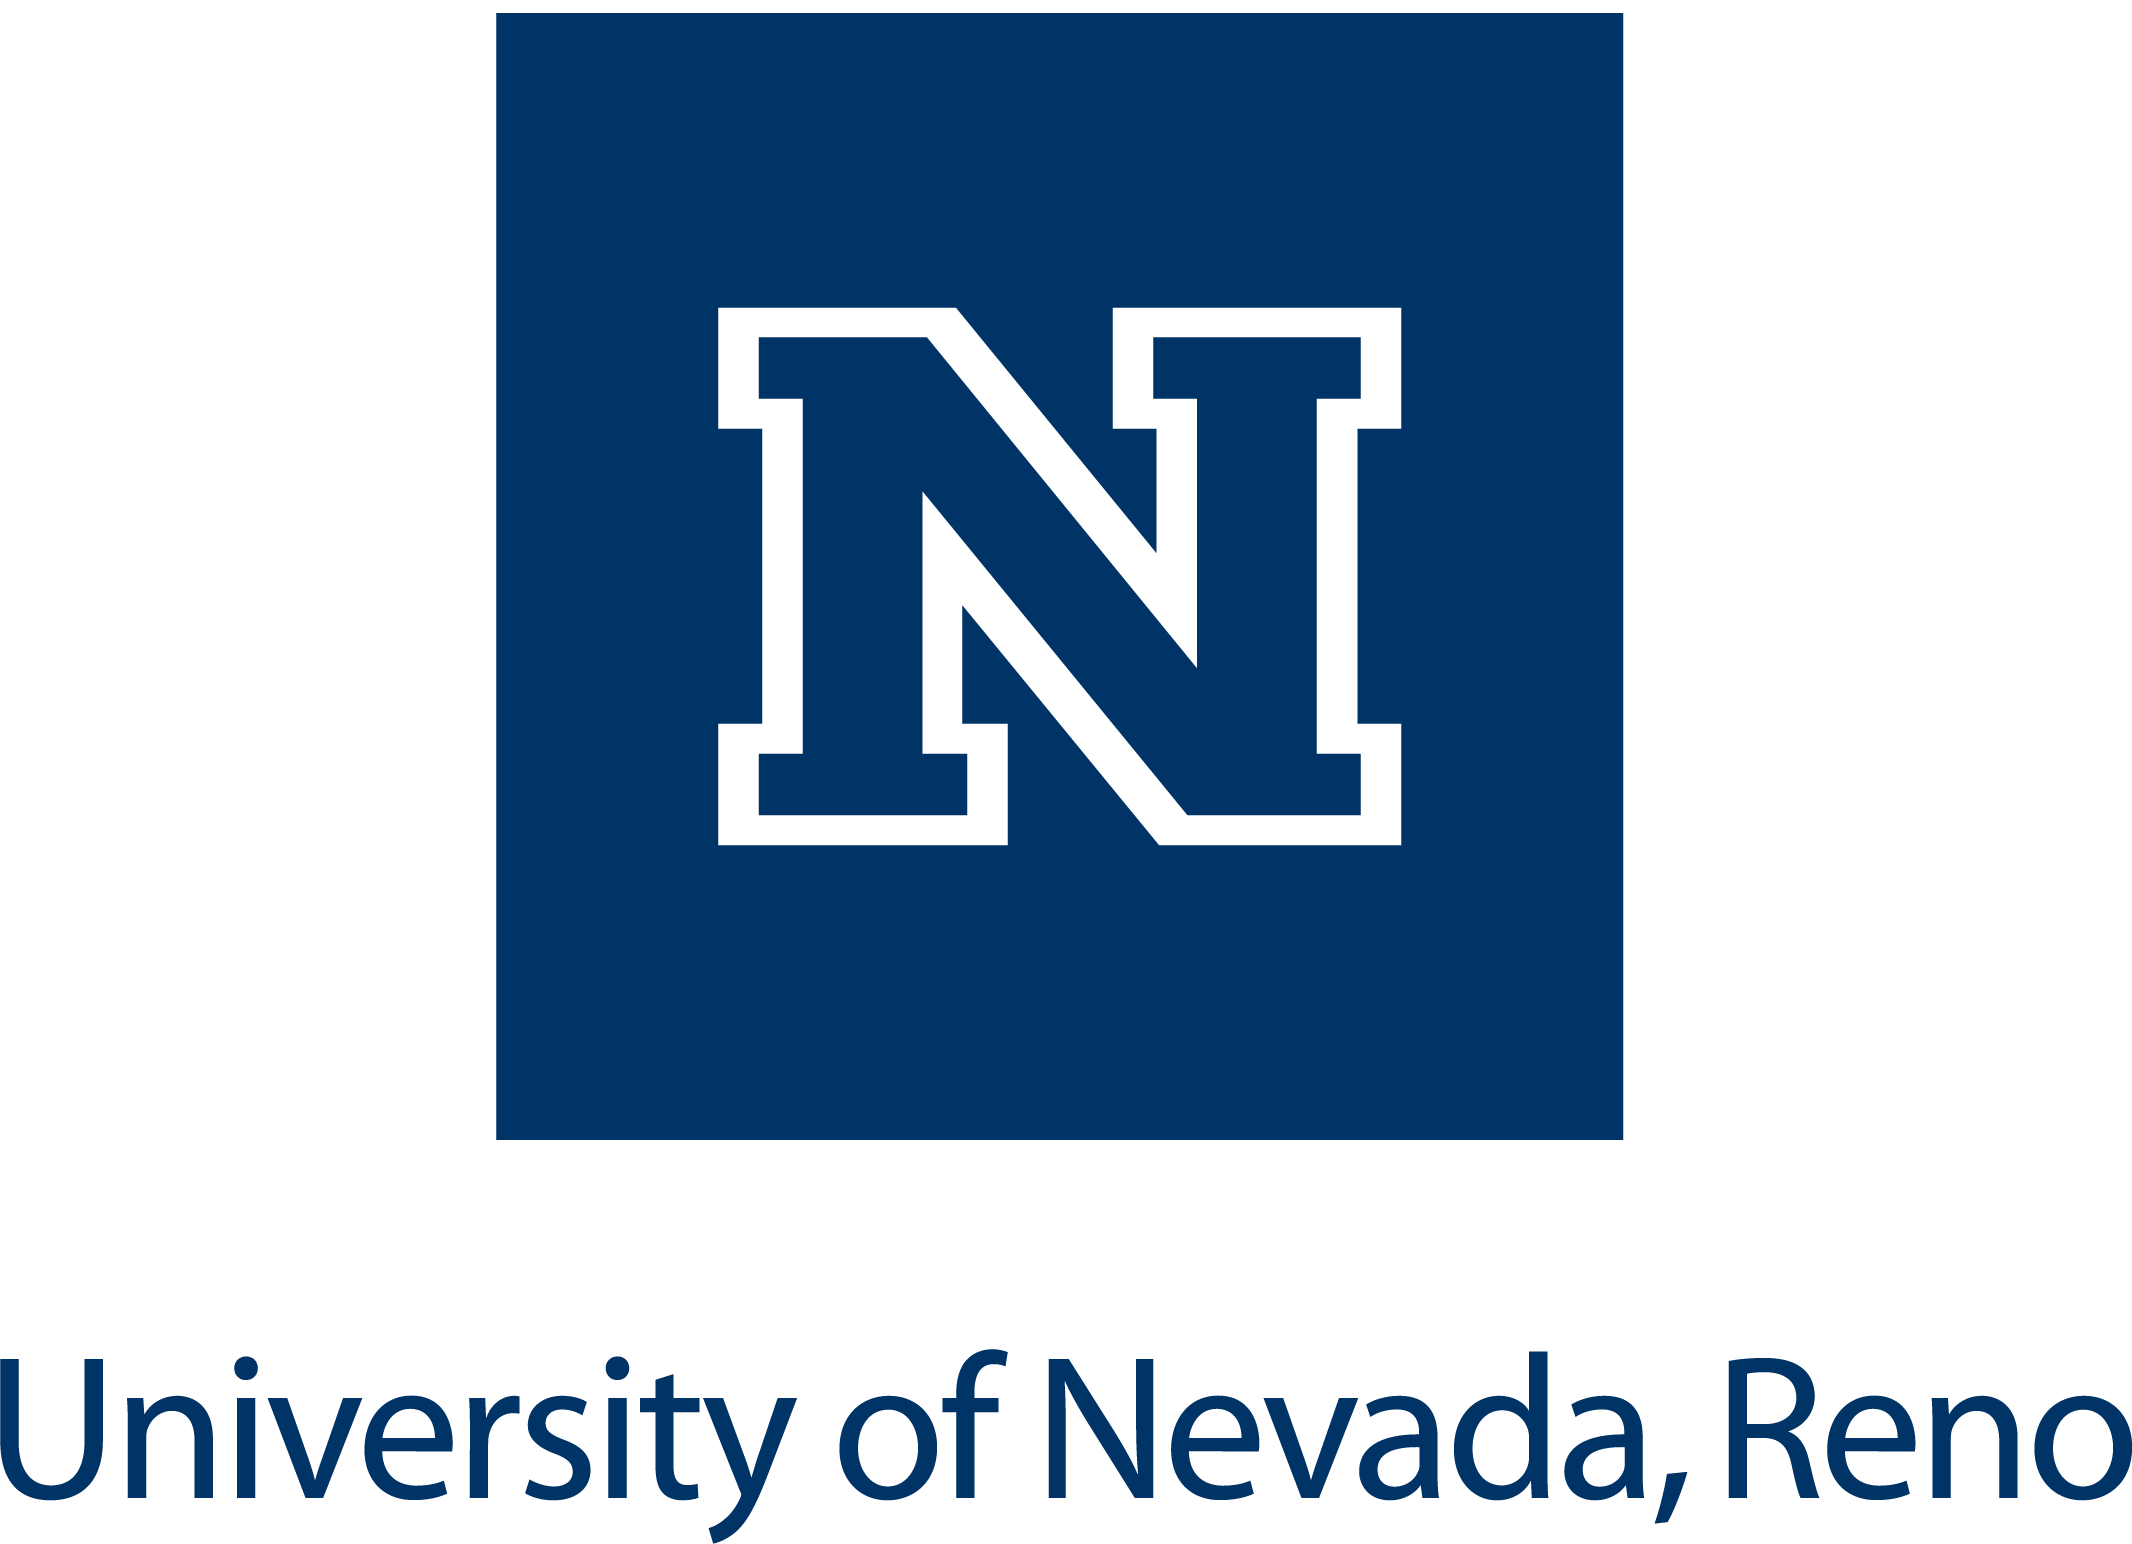 Reno Logo - Downloading Logos